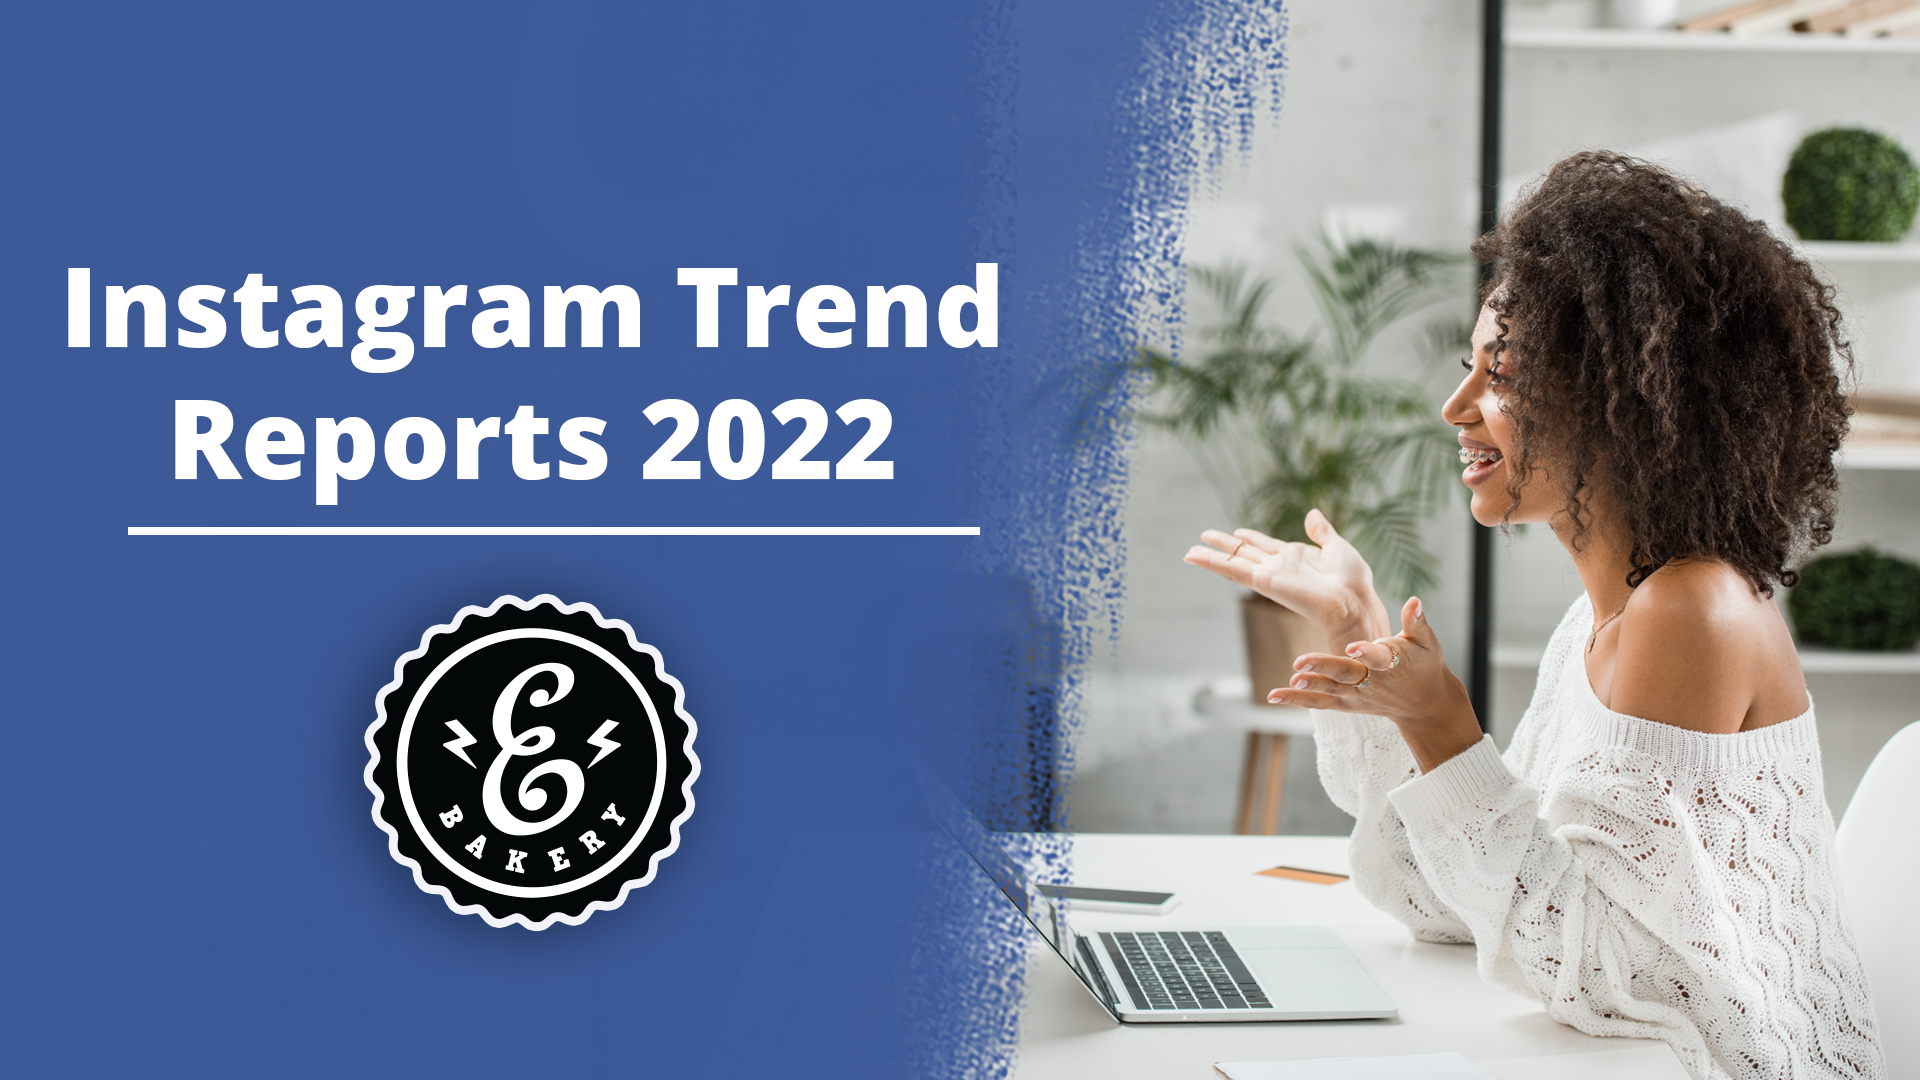 Relatórios de tendências do Instagram 2022 – Tendências no Instagram em 2022